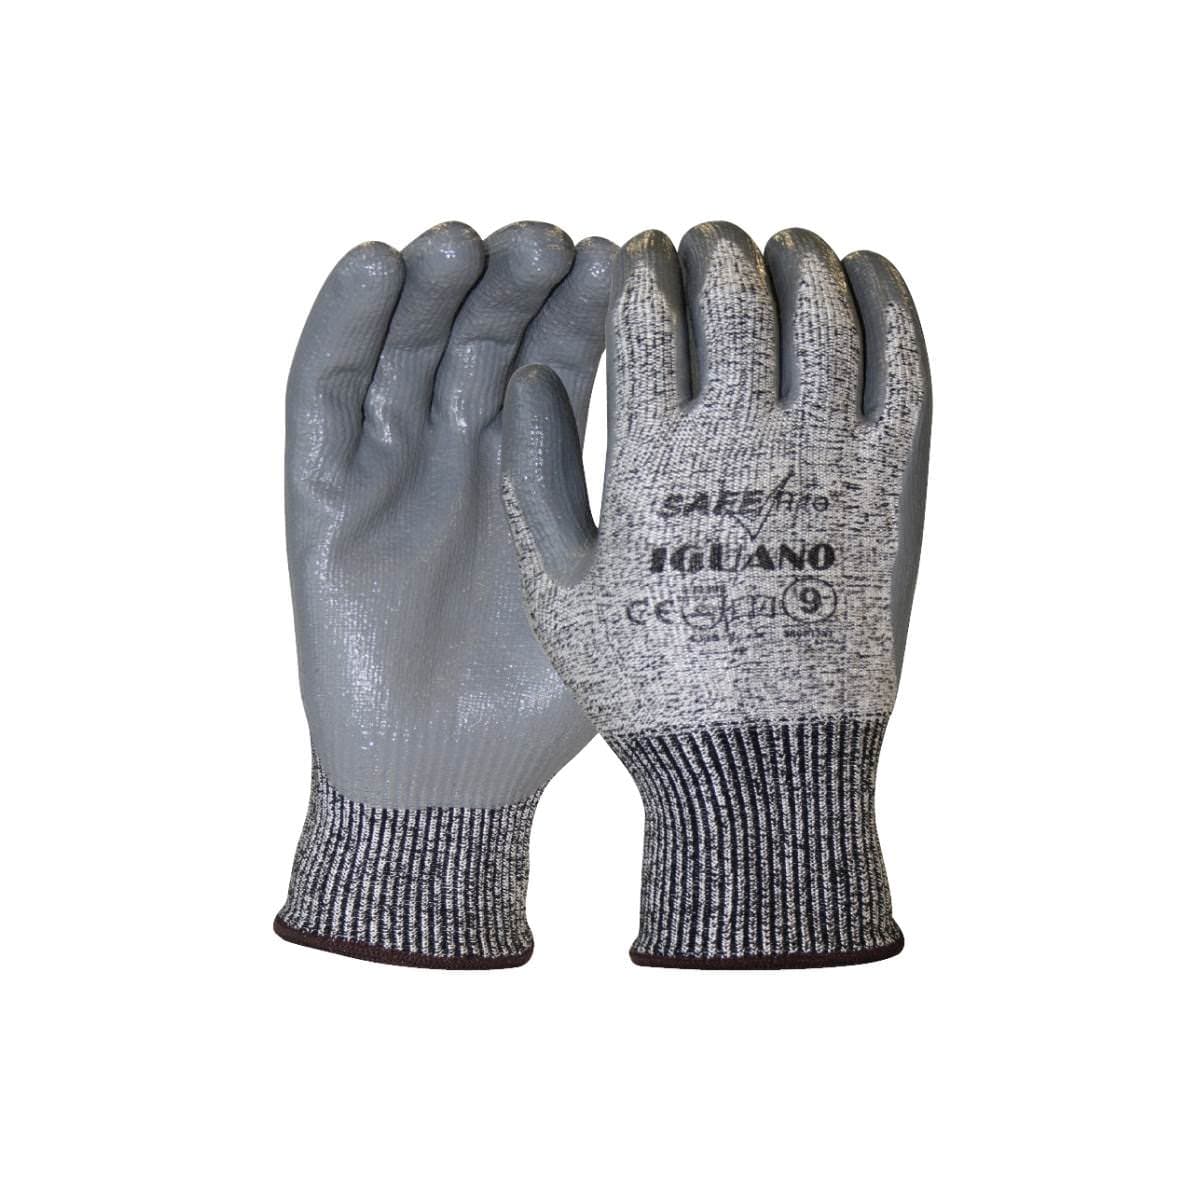 SafeRite® Iguano Cut 3 Nitrile Glove SRCUT3NT (Pack of 12)